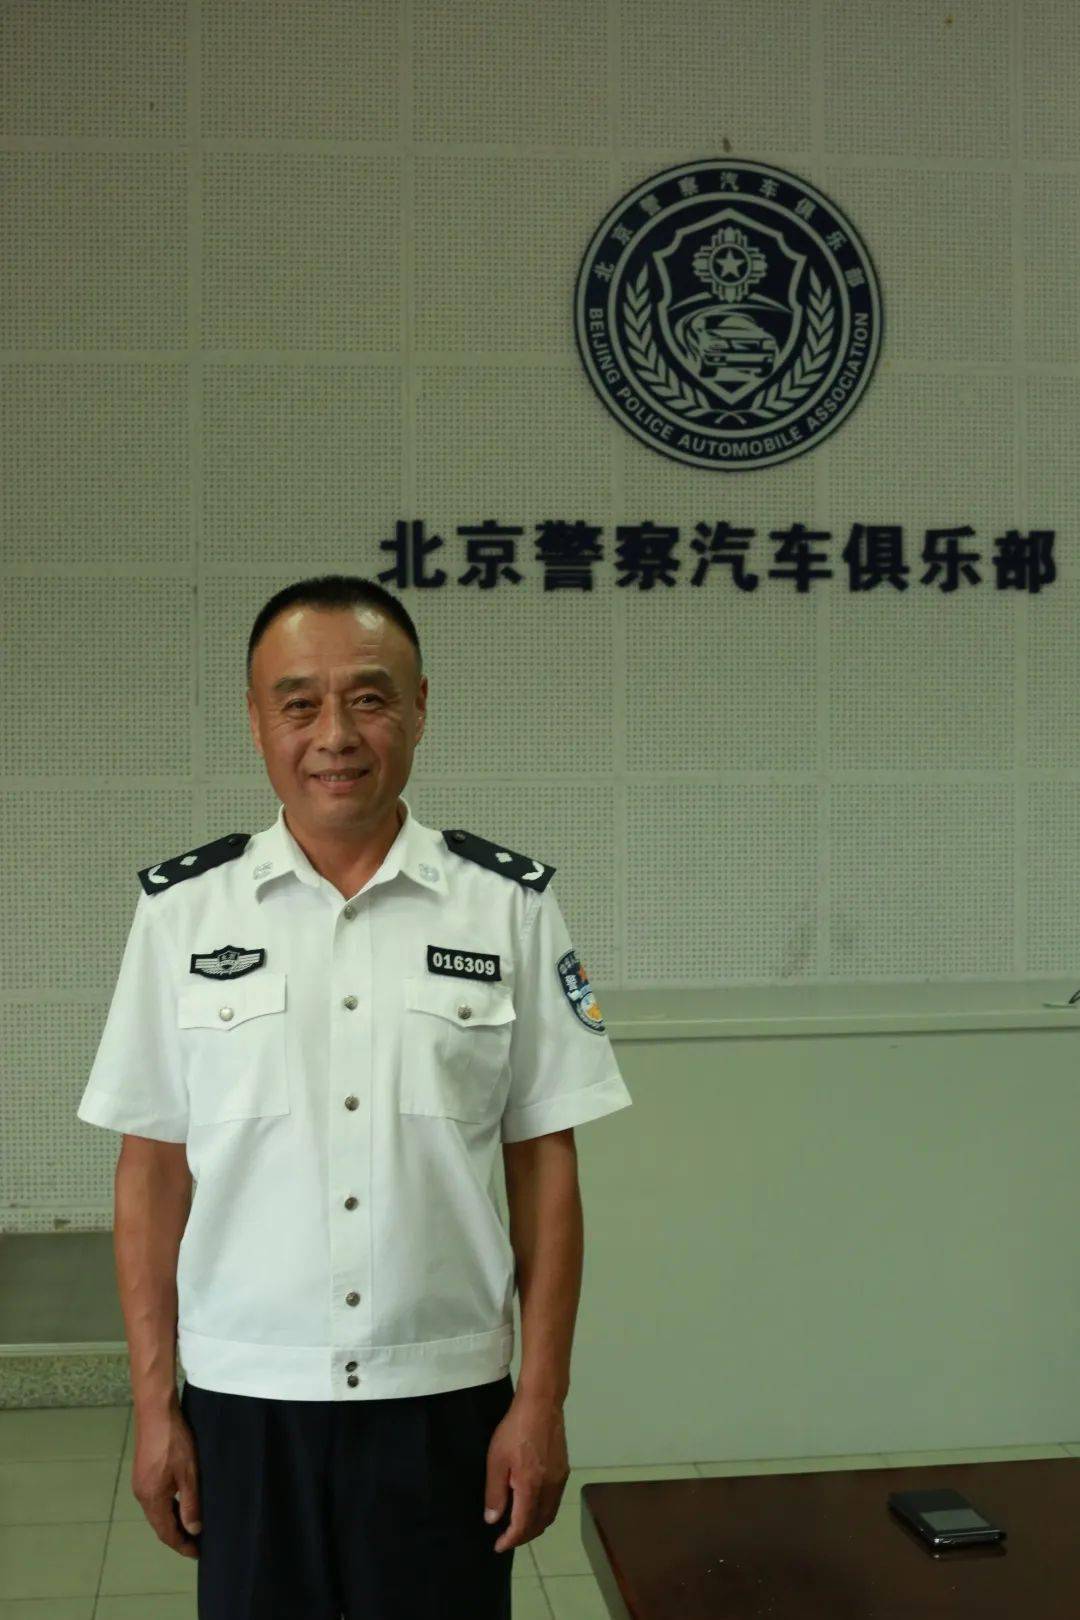 柳实:现任北京警察学院教授, 警务车辆特种驾驶技战术课程负责人